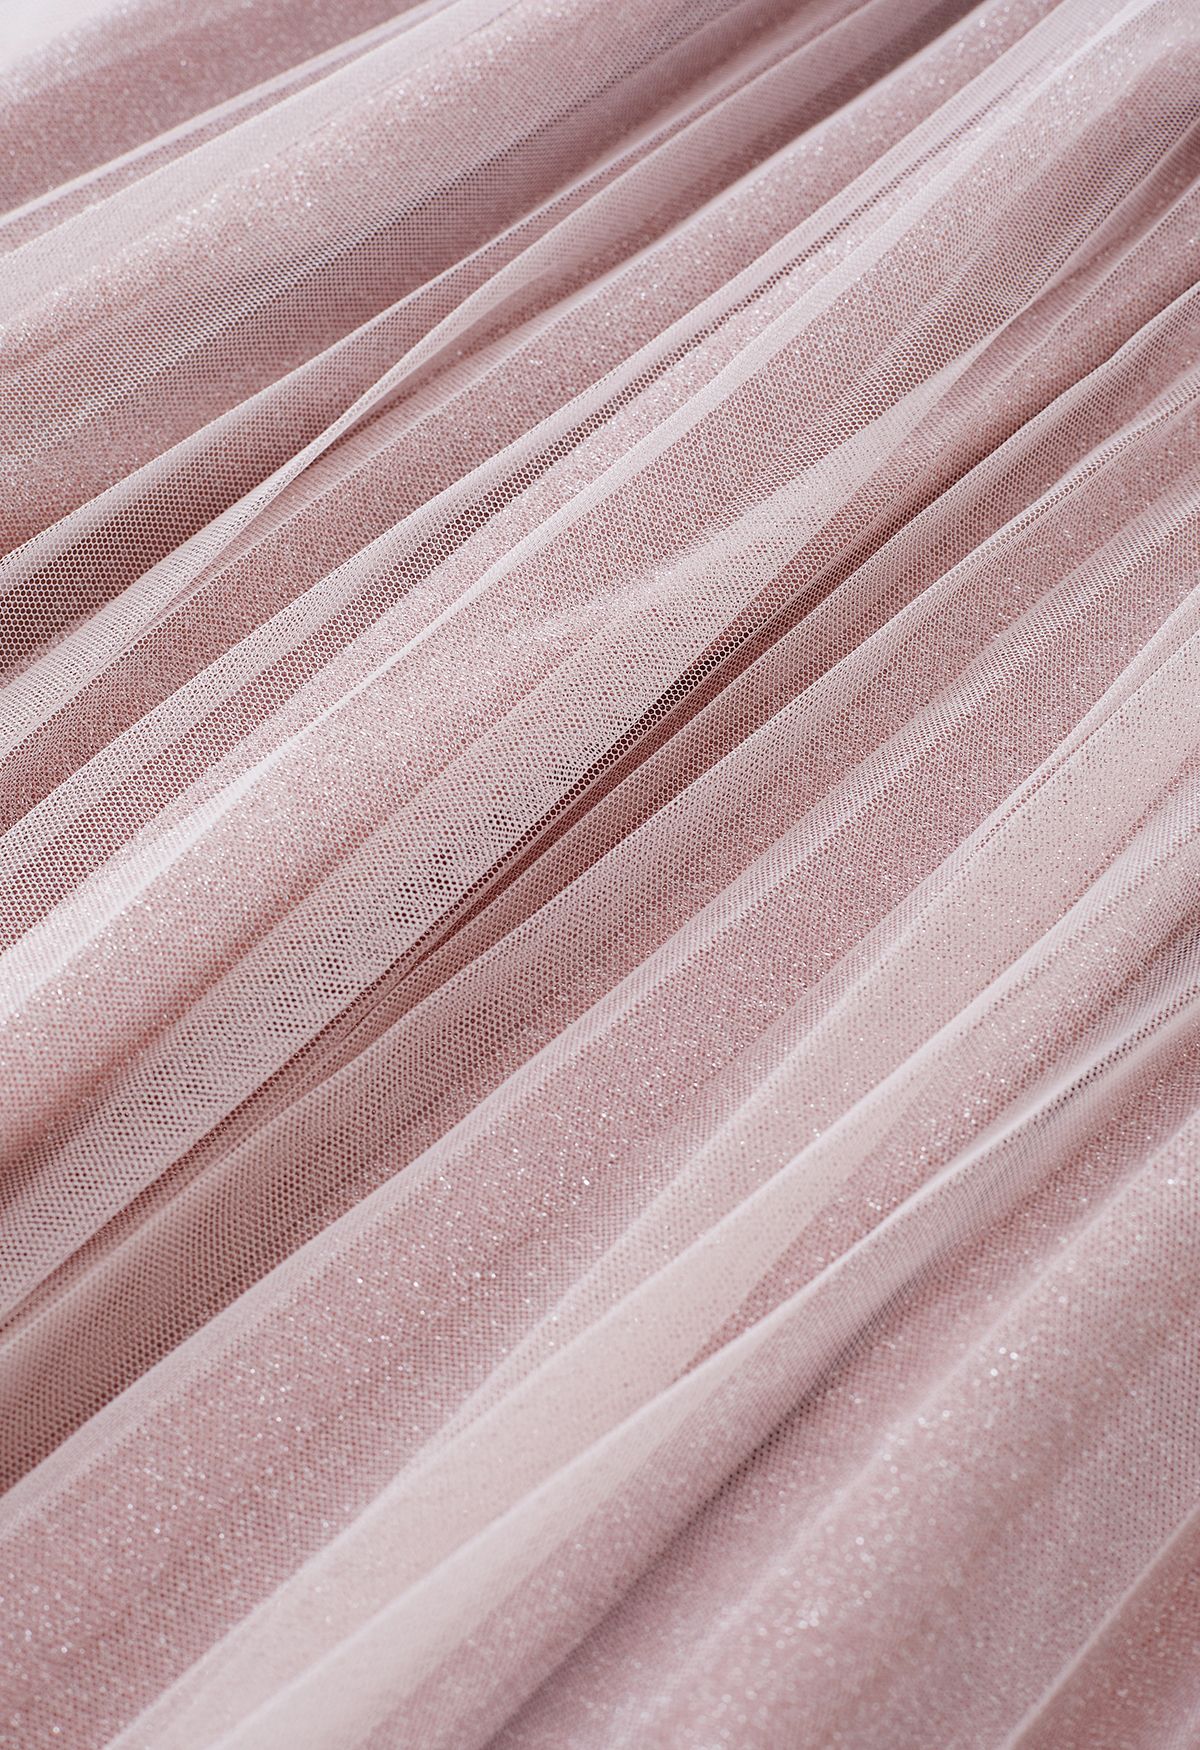 Falda midi de malla plisada brillante en rosa